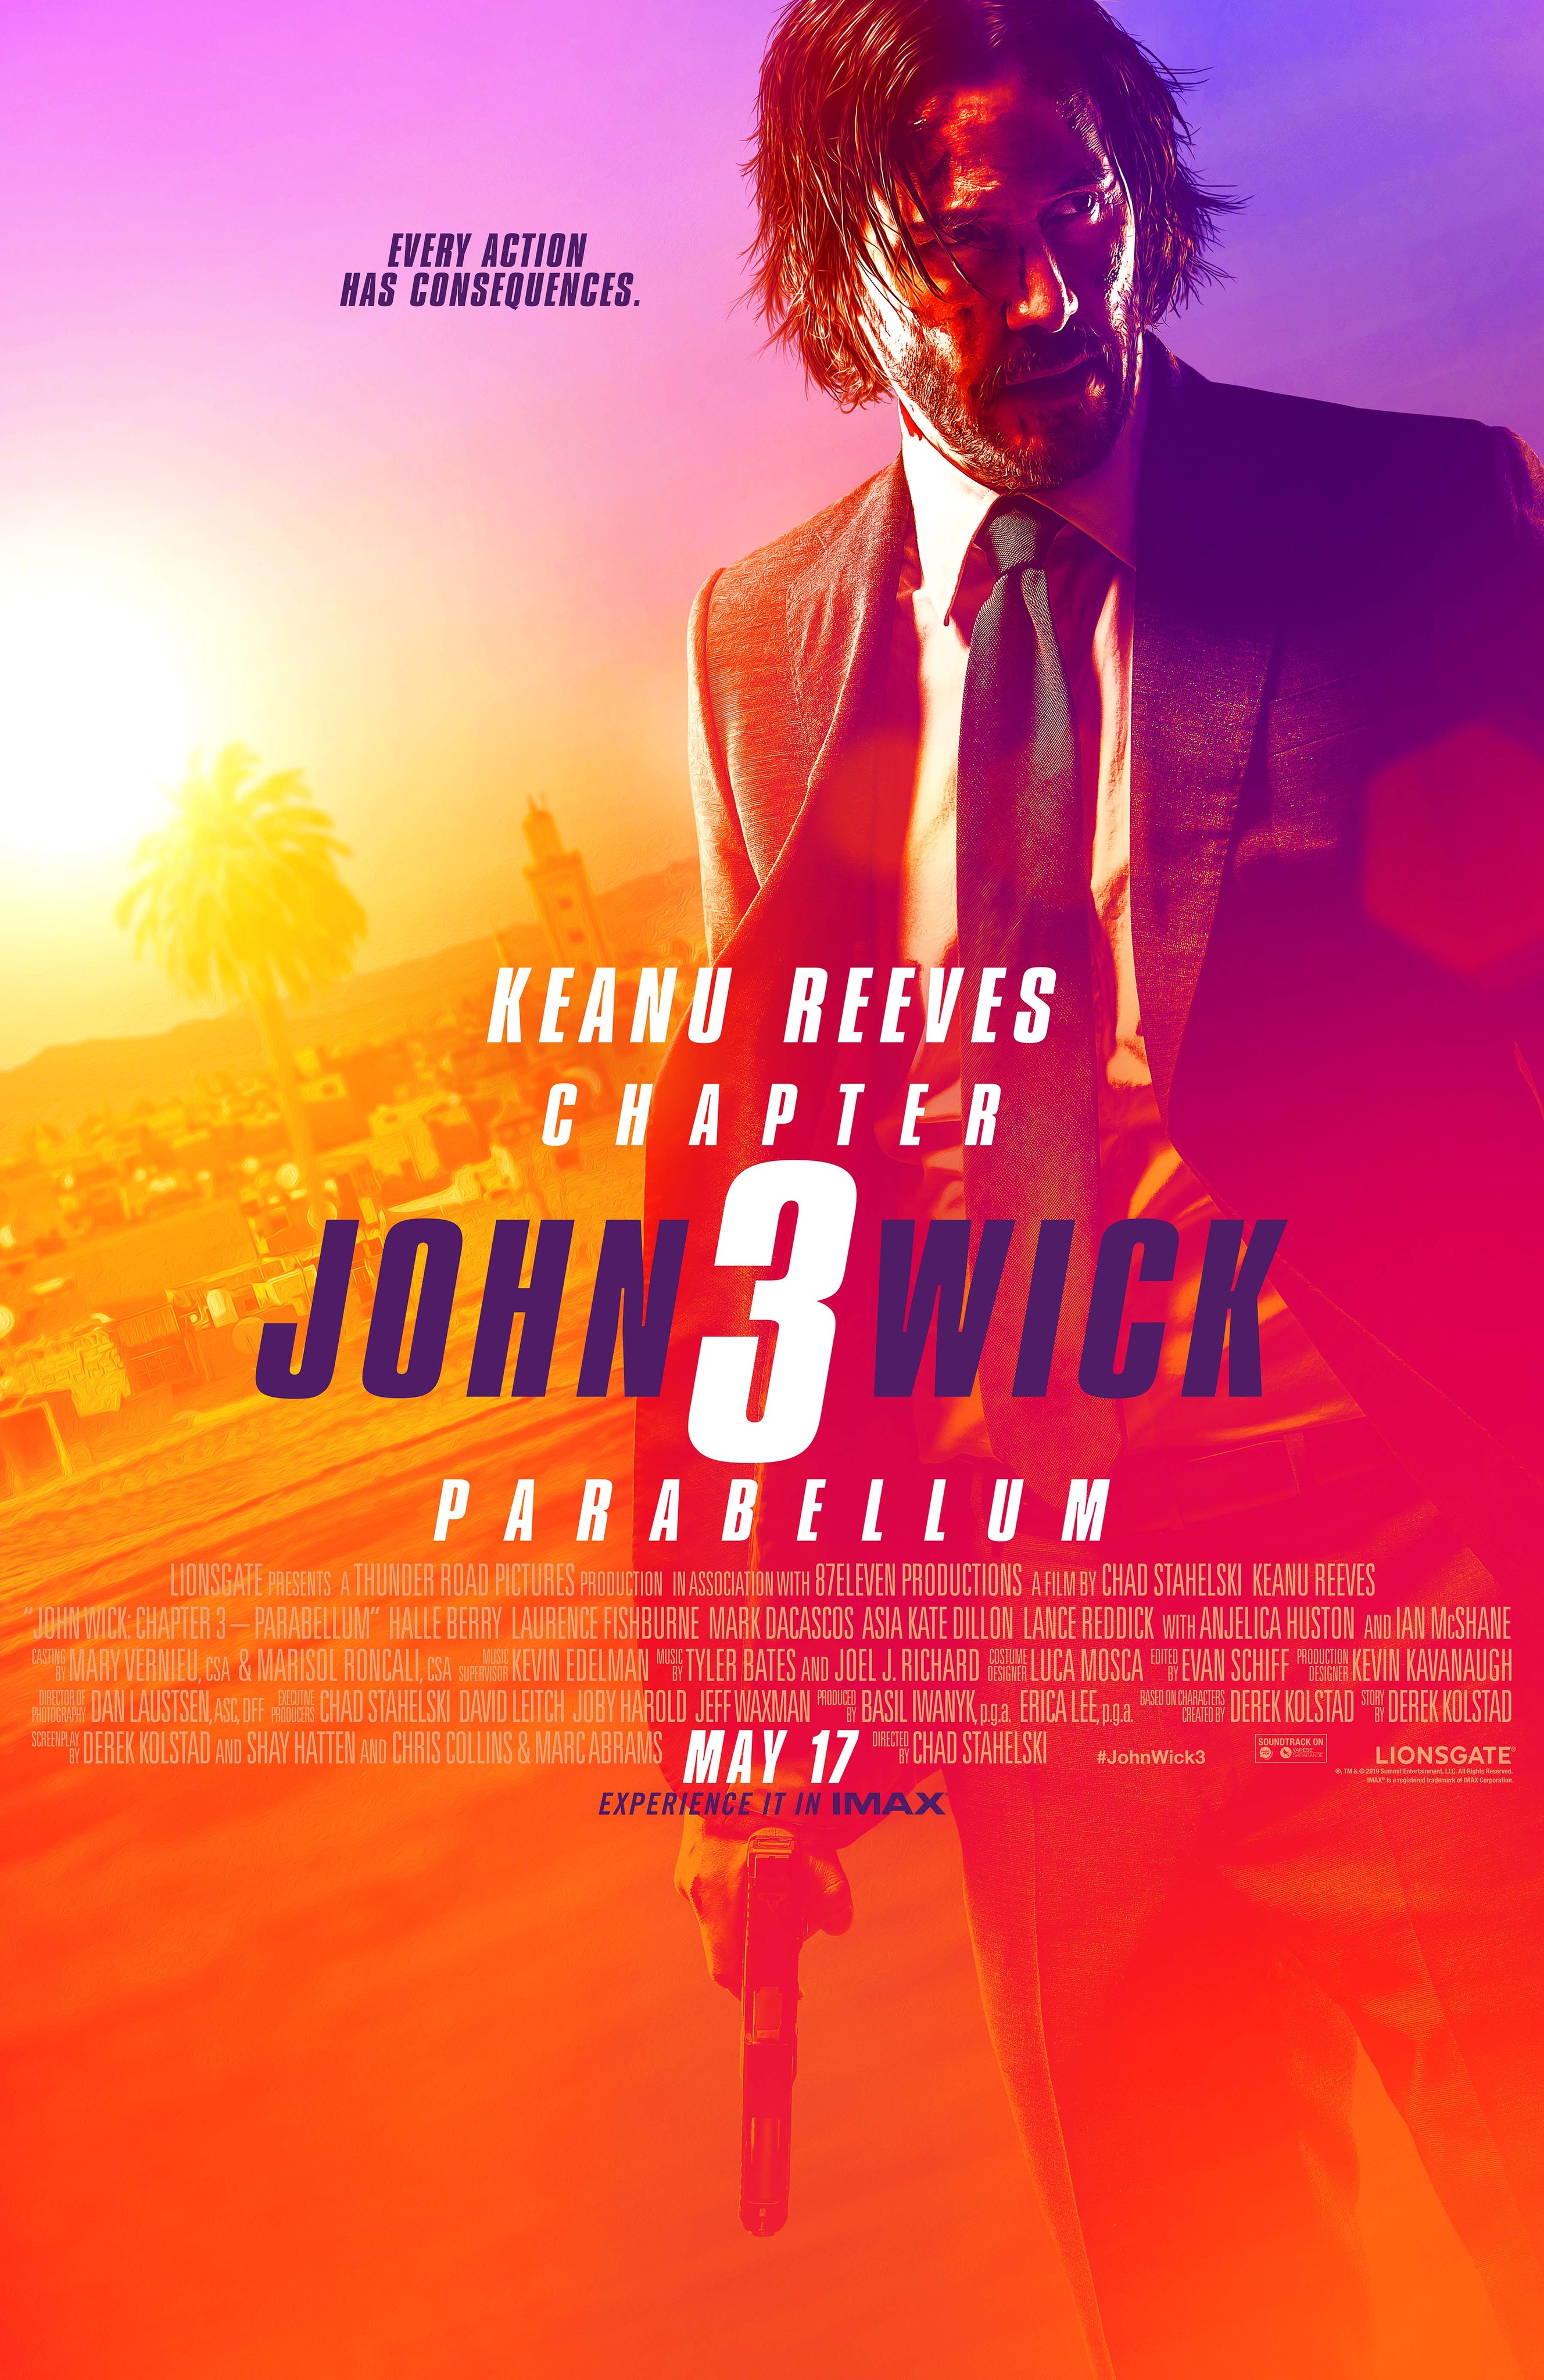 Keanu Reeves is 'John Wick' on Peacock – Stream On Demand